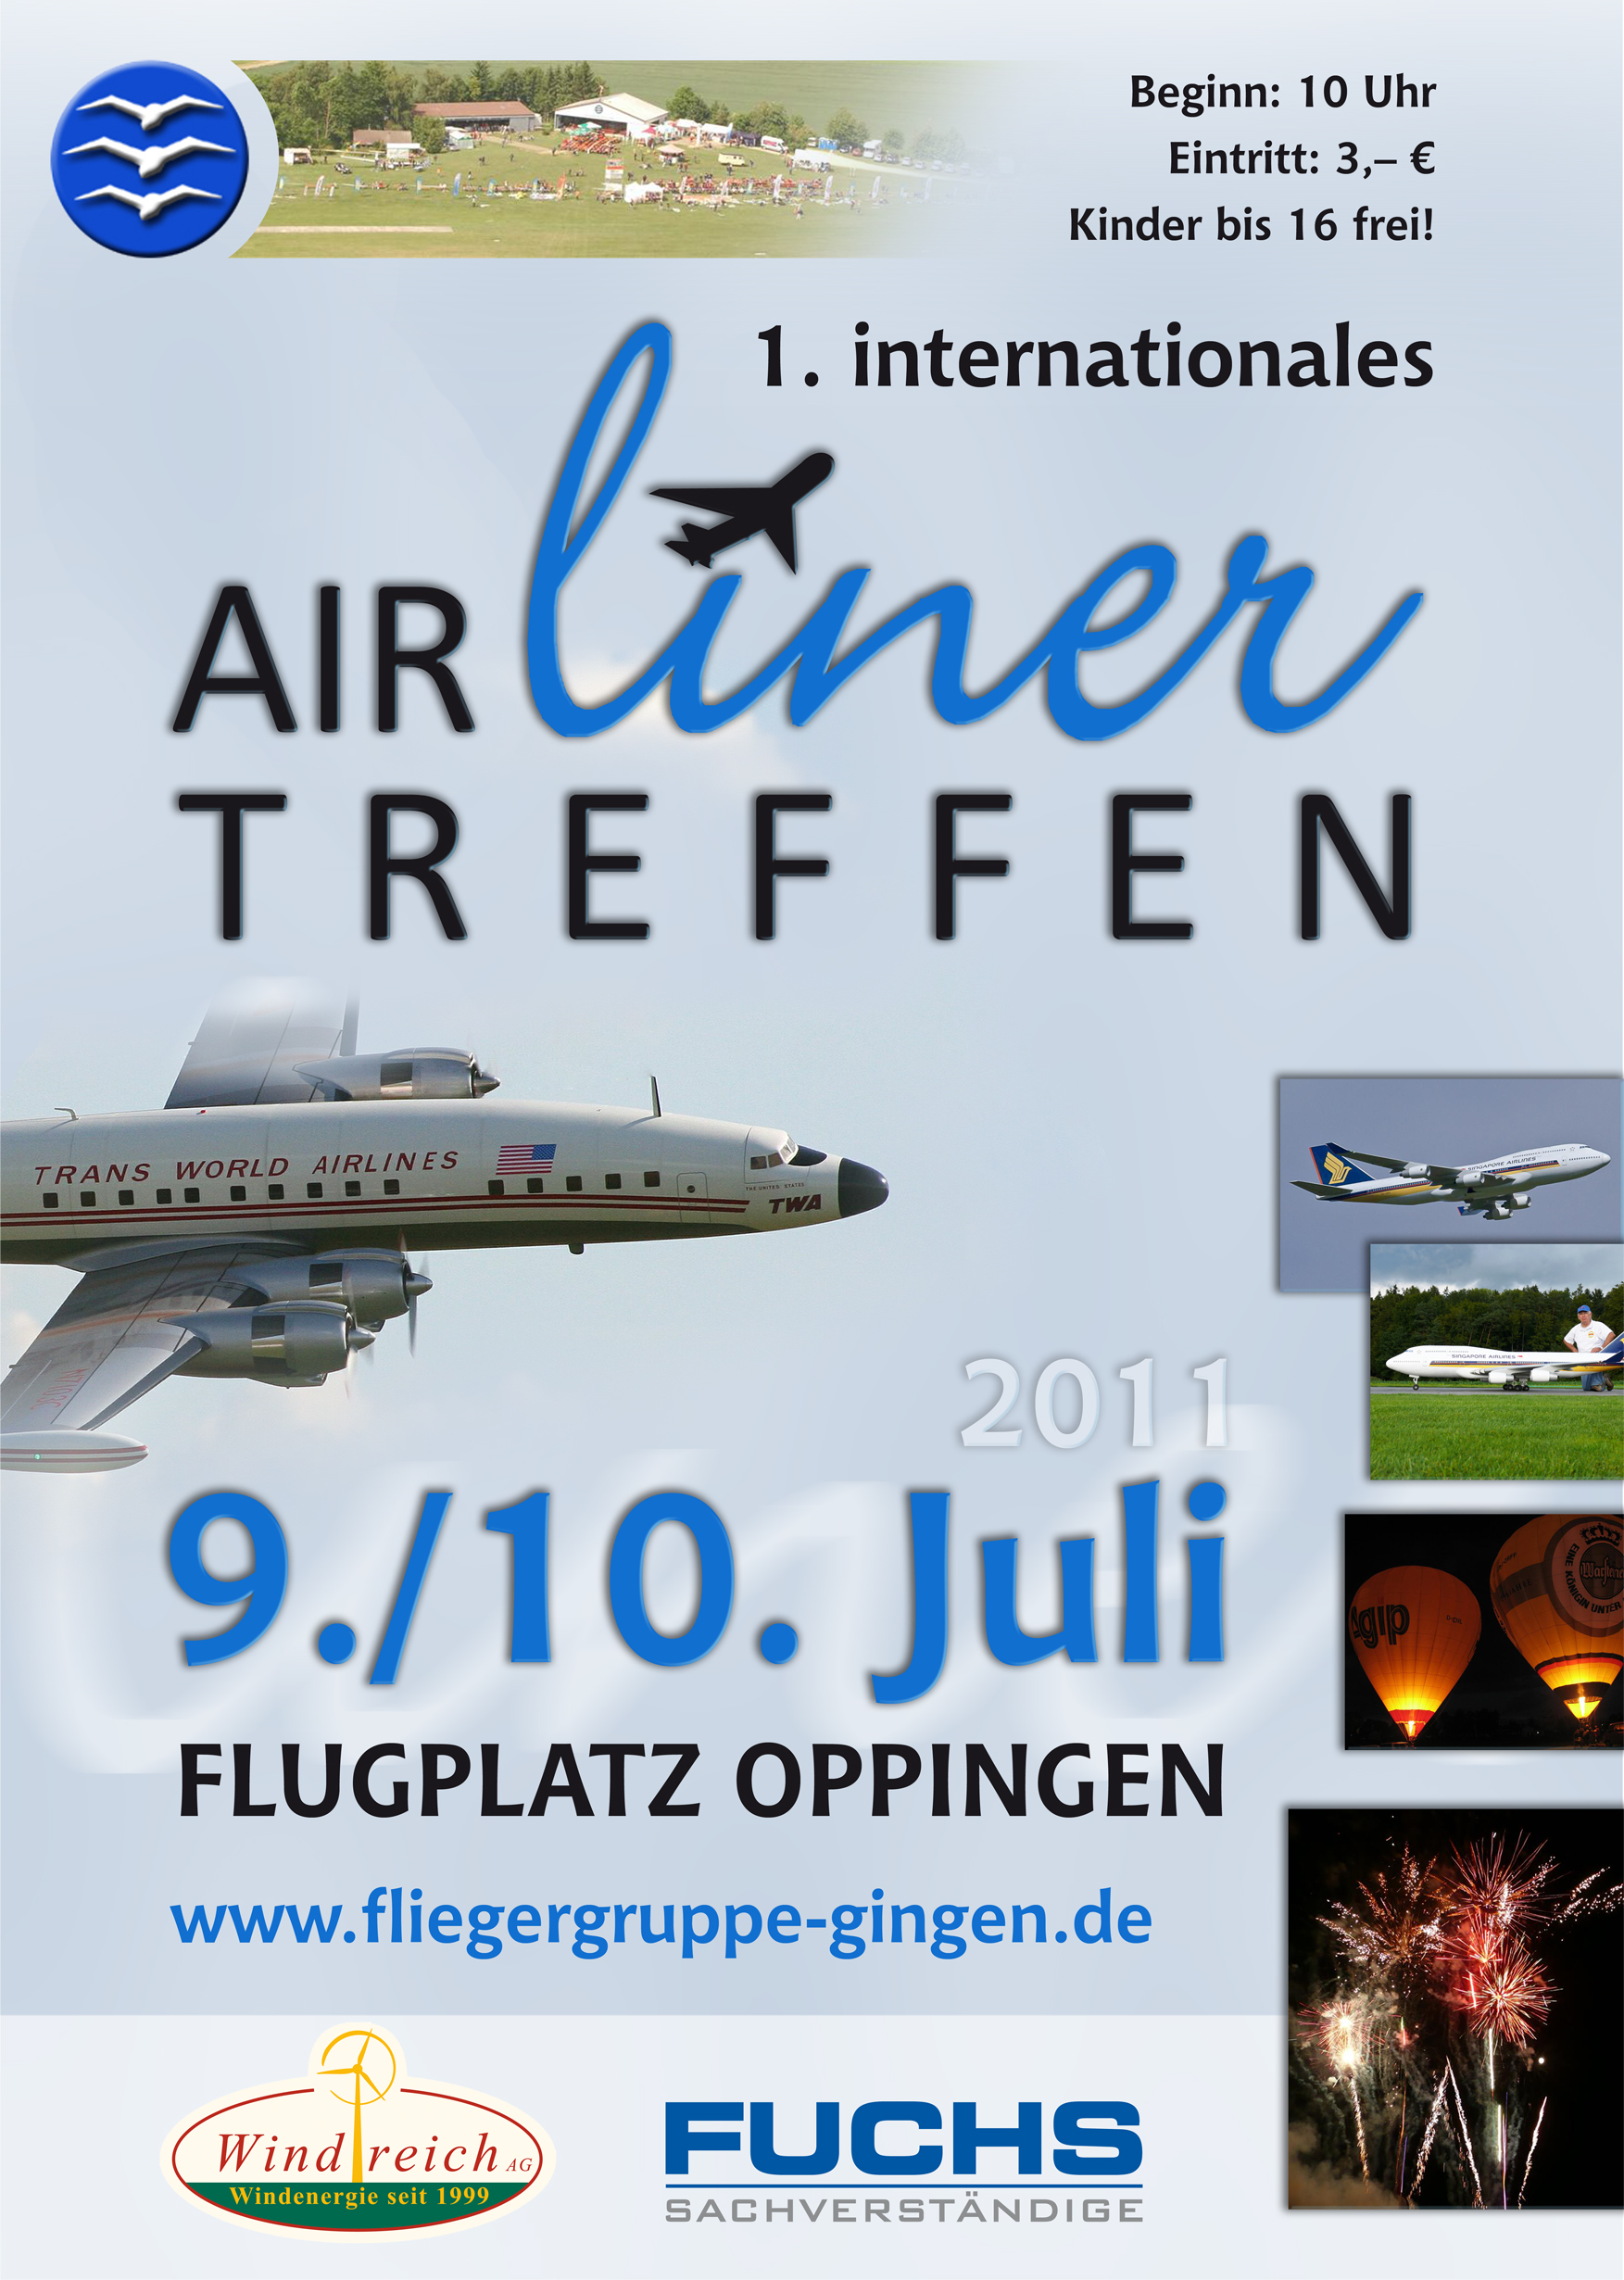 Airlinertreffen 2011